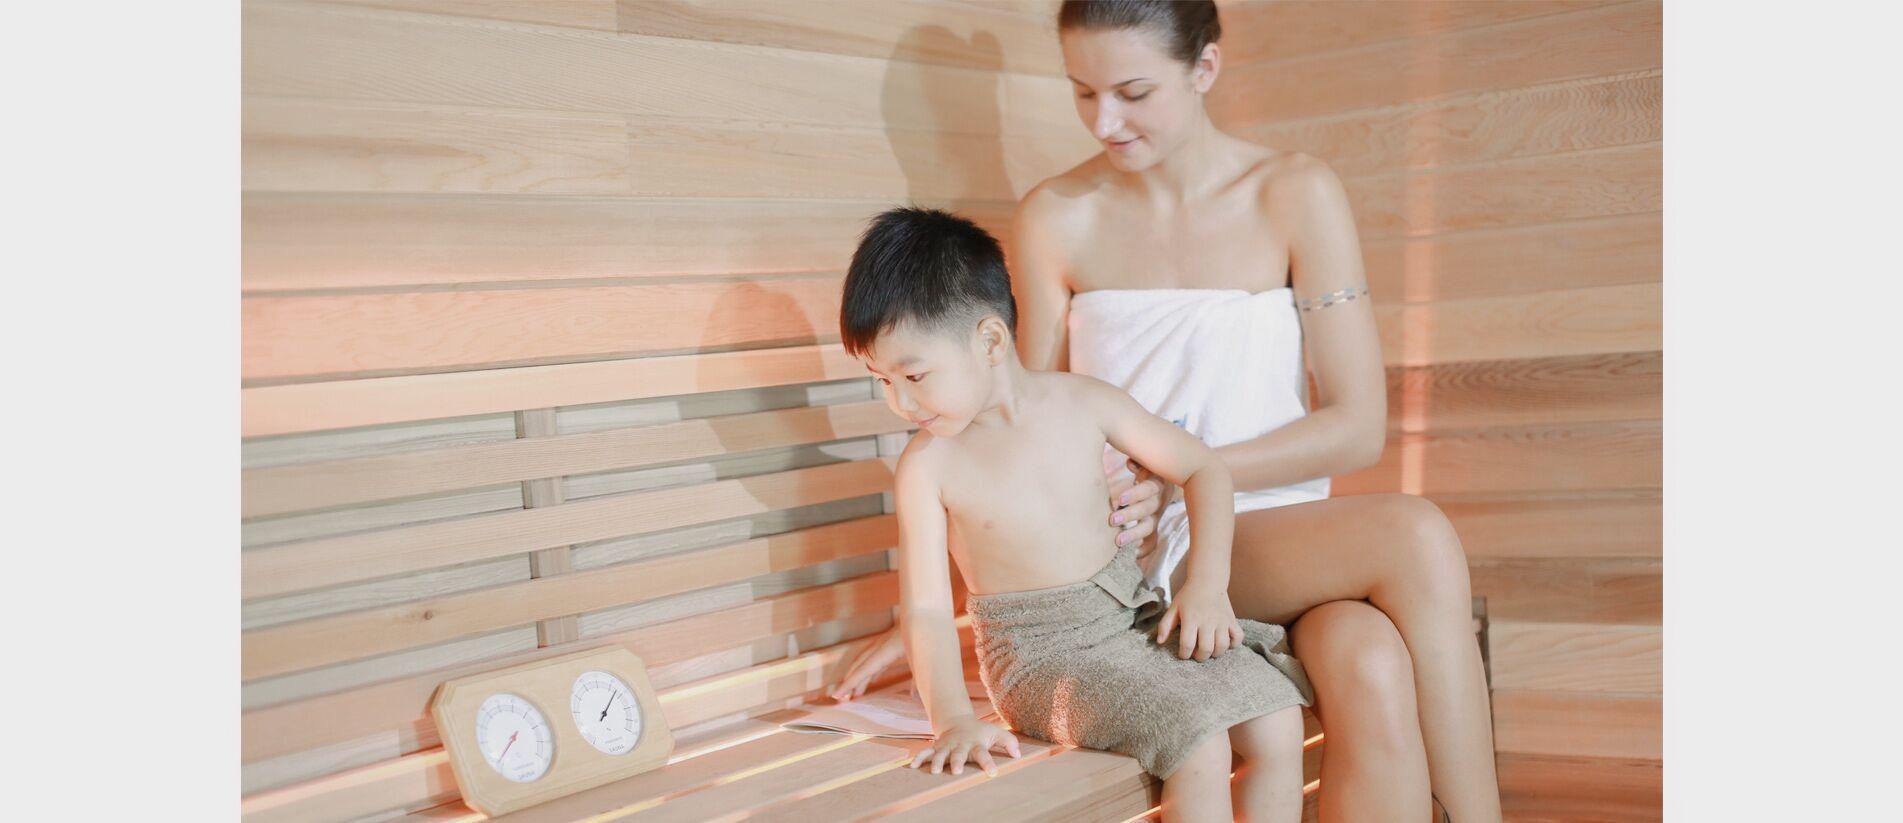 TOLO sauna room with real usage scenario kid